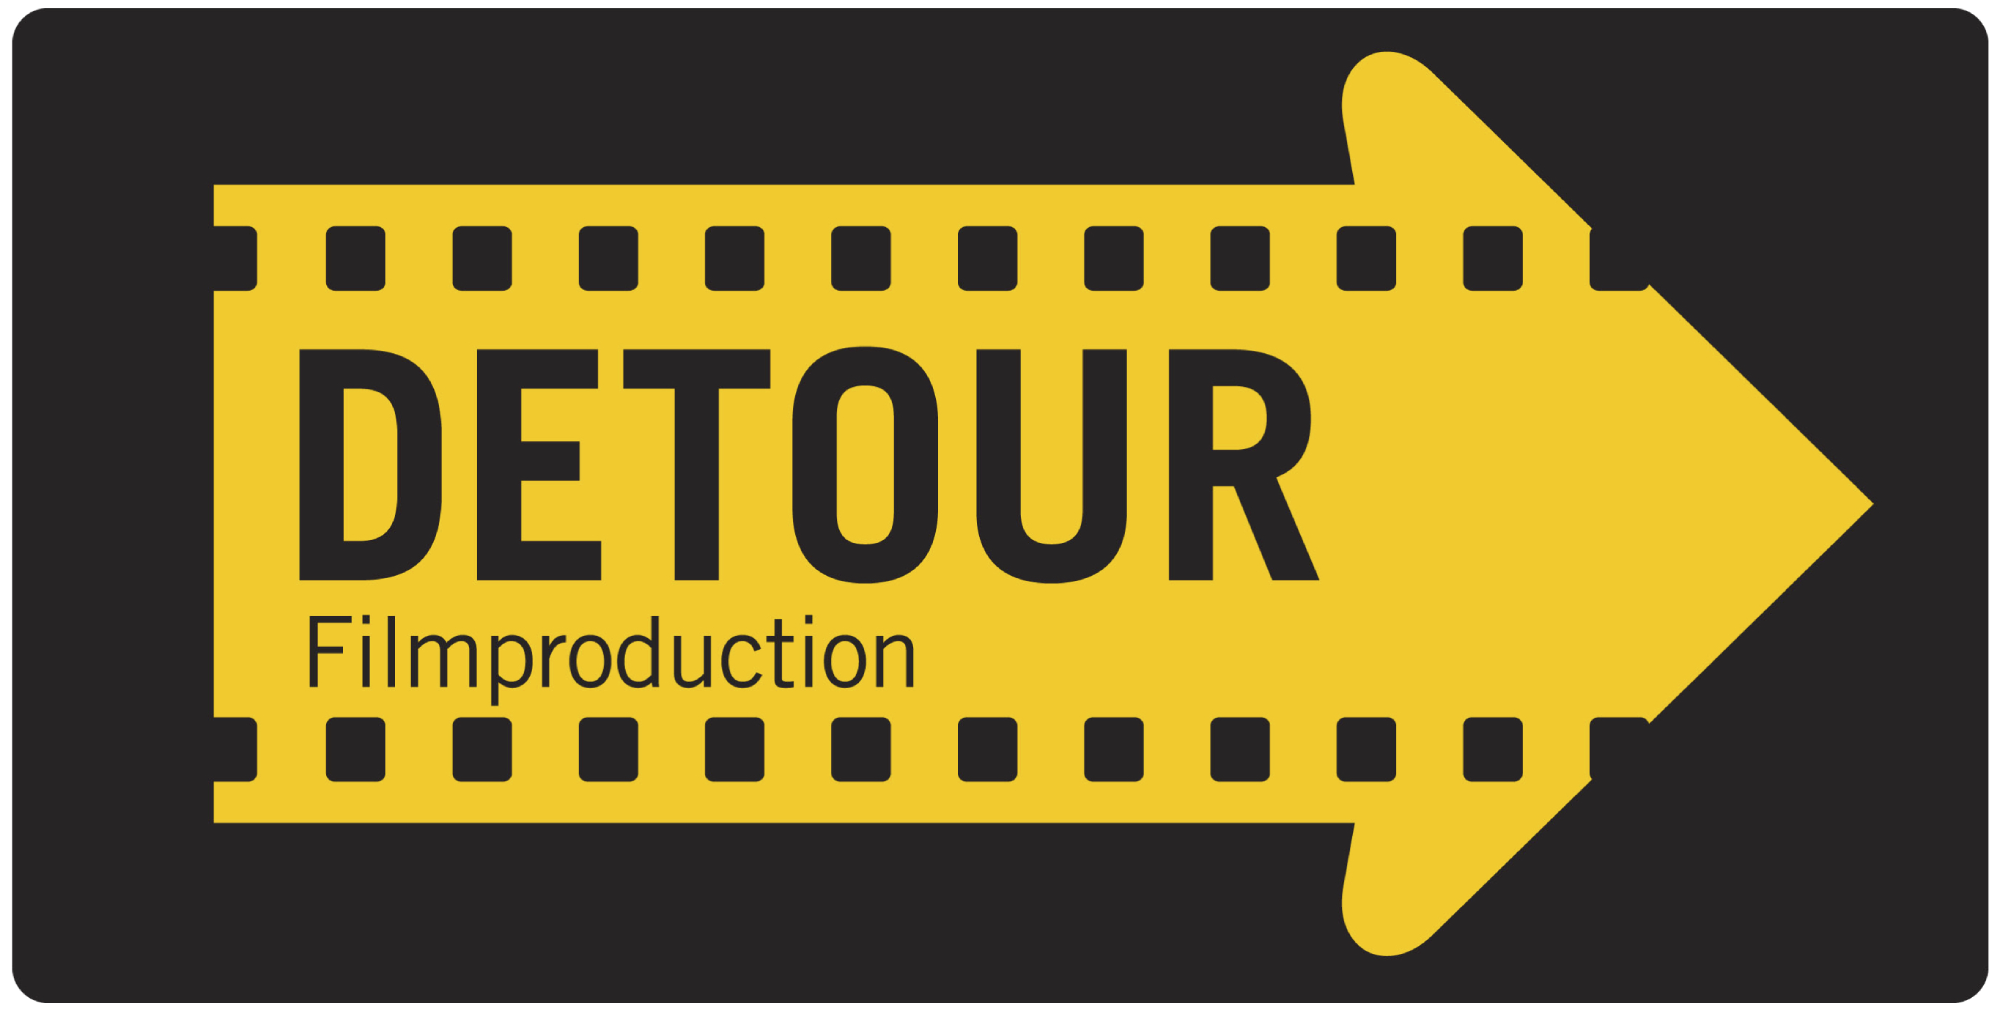 Detour Filmproduction - company